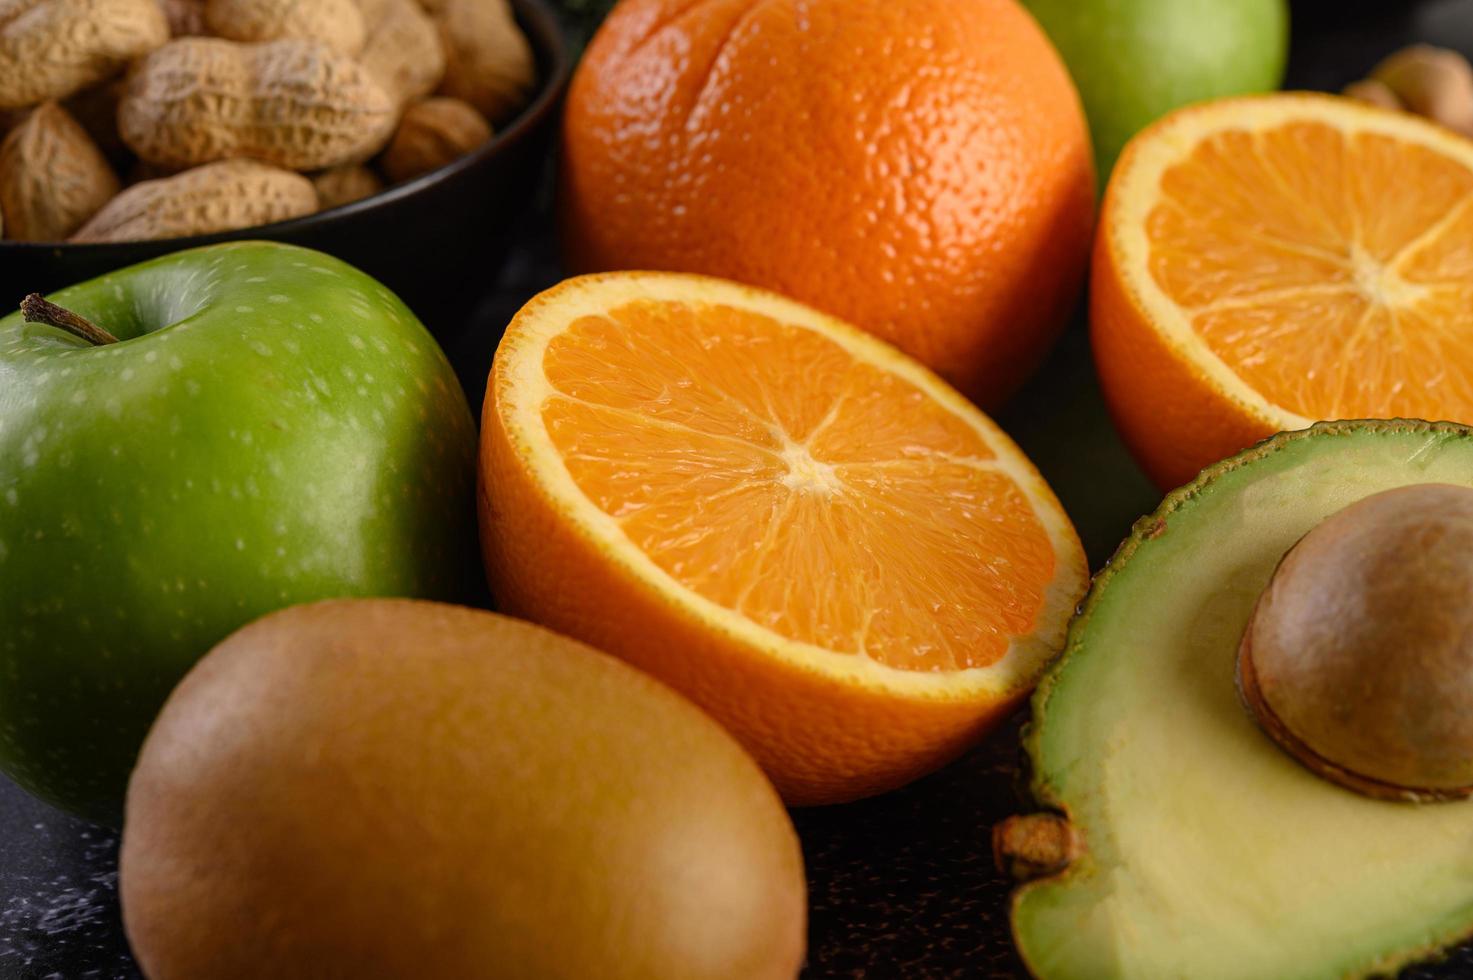 fatia de laranja fresca, maçã, kiwi e abacate em close-up foto